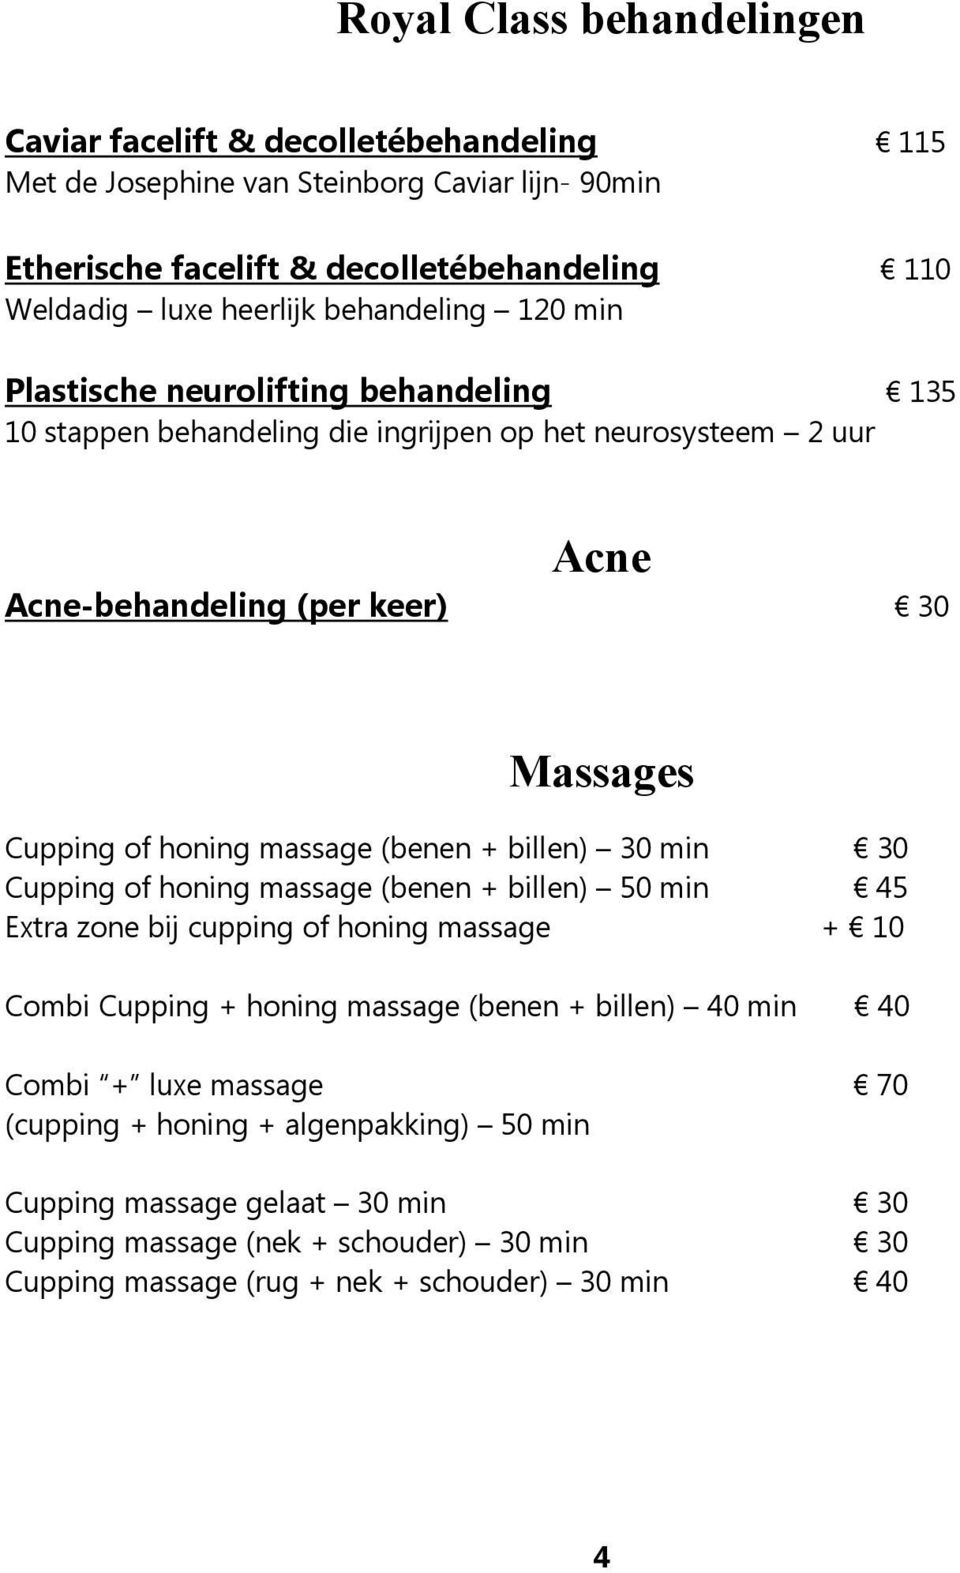 massage (benen + billen) 30 min 30 Cupping of honing massage (benen + billen) 50 min 45 Extra zone bij cupping of honing massage + 10 Combi Cupping + honing massage (benen + billen) 40 min